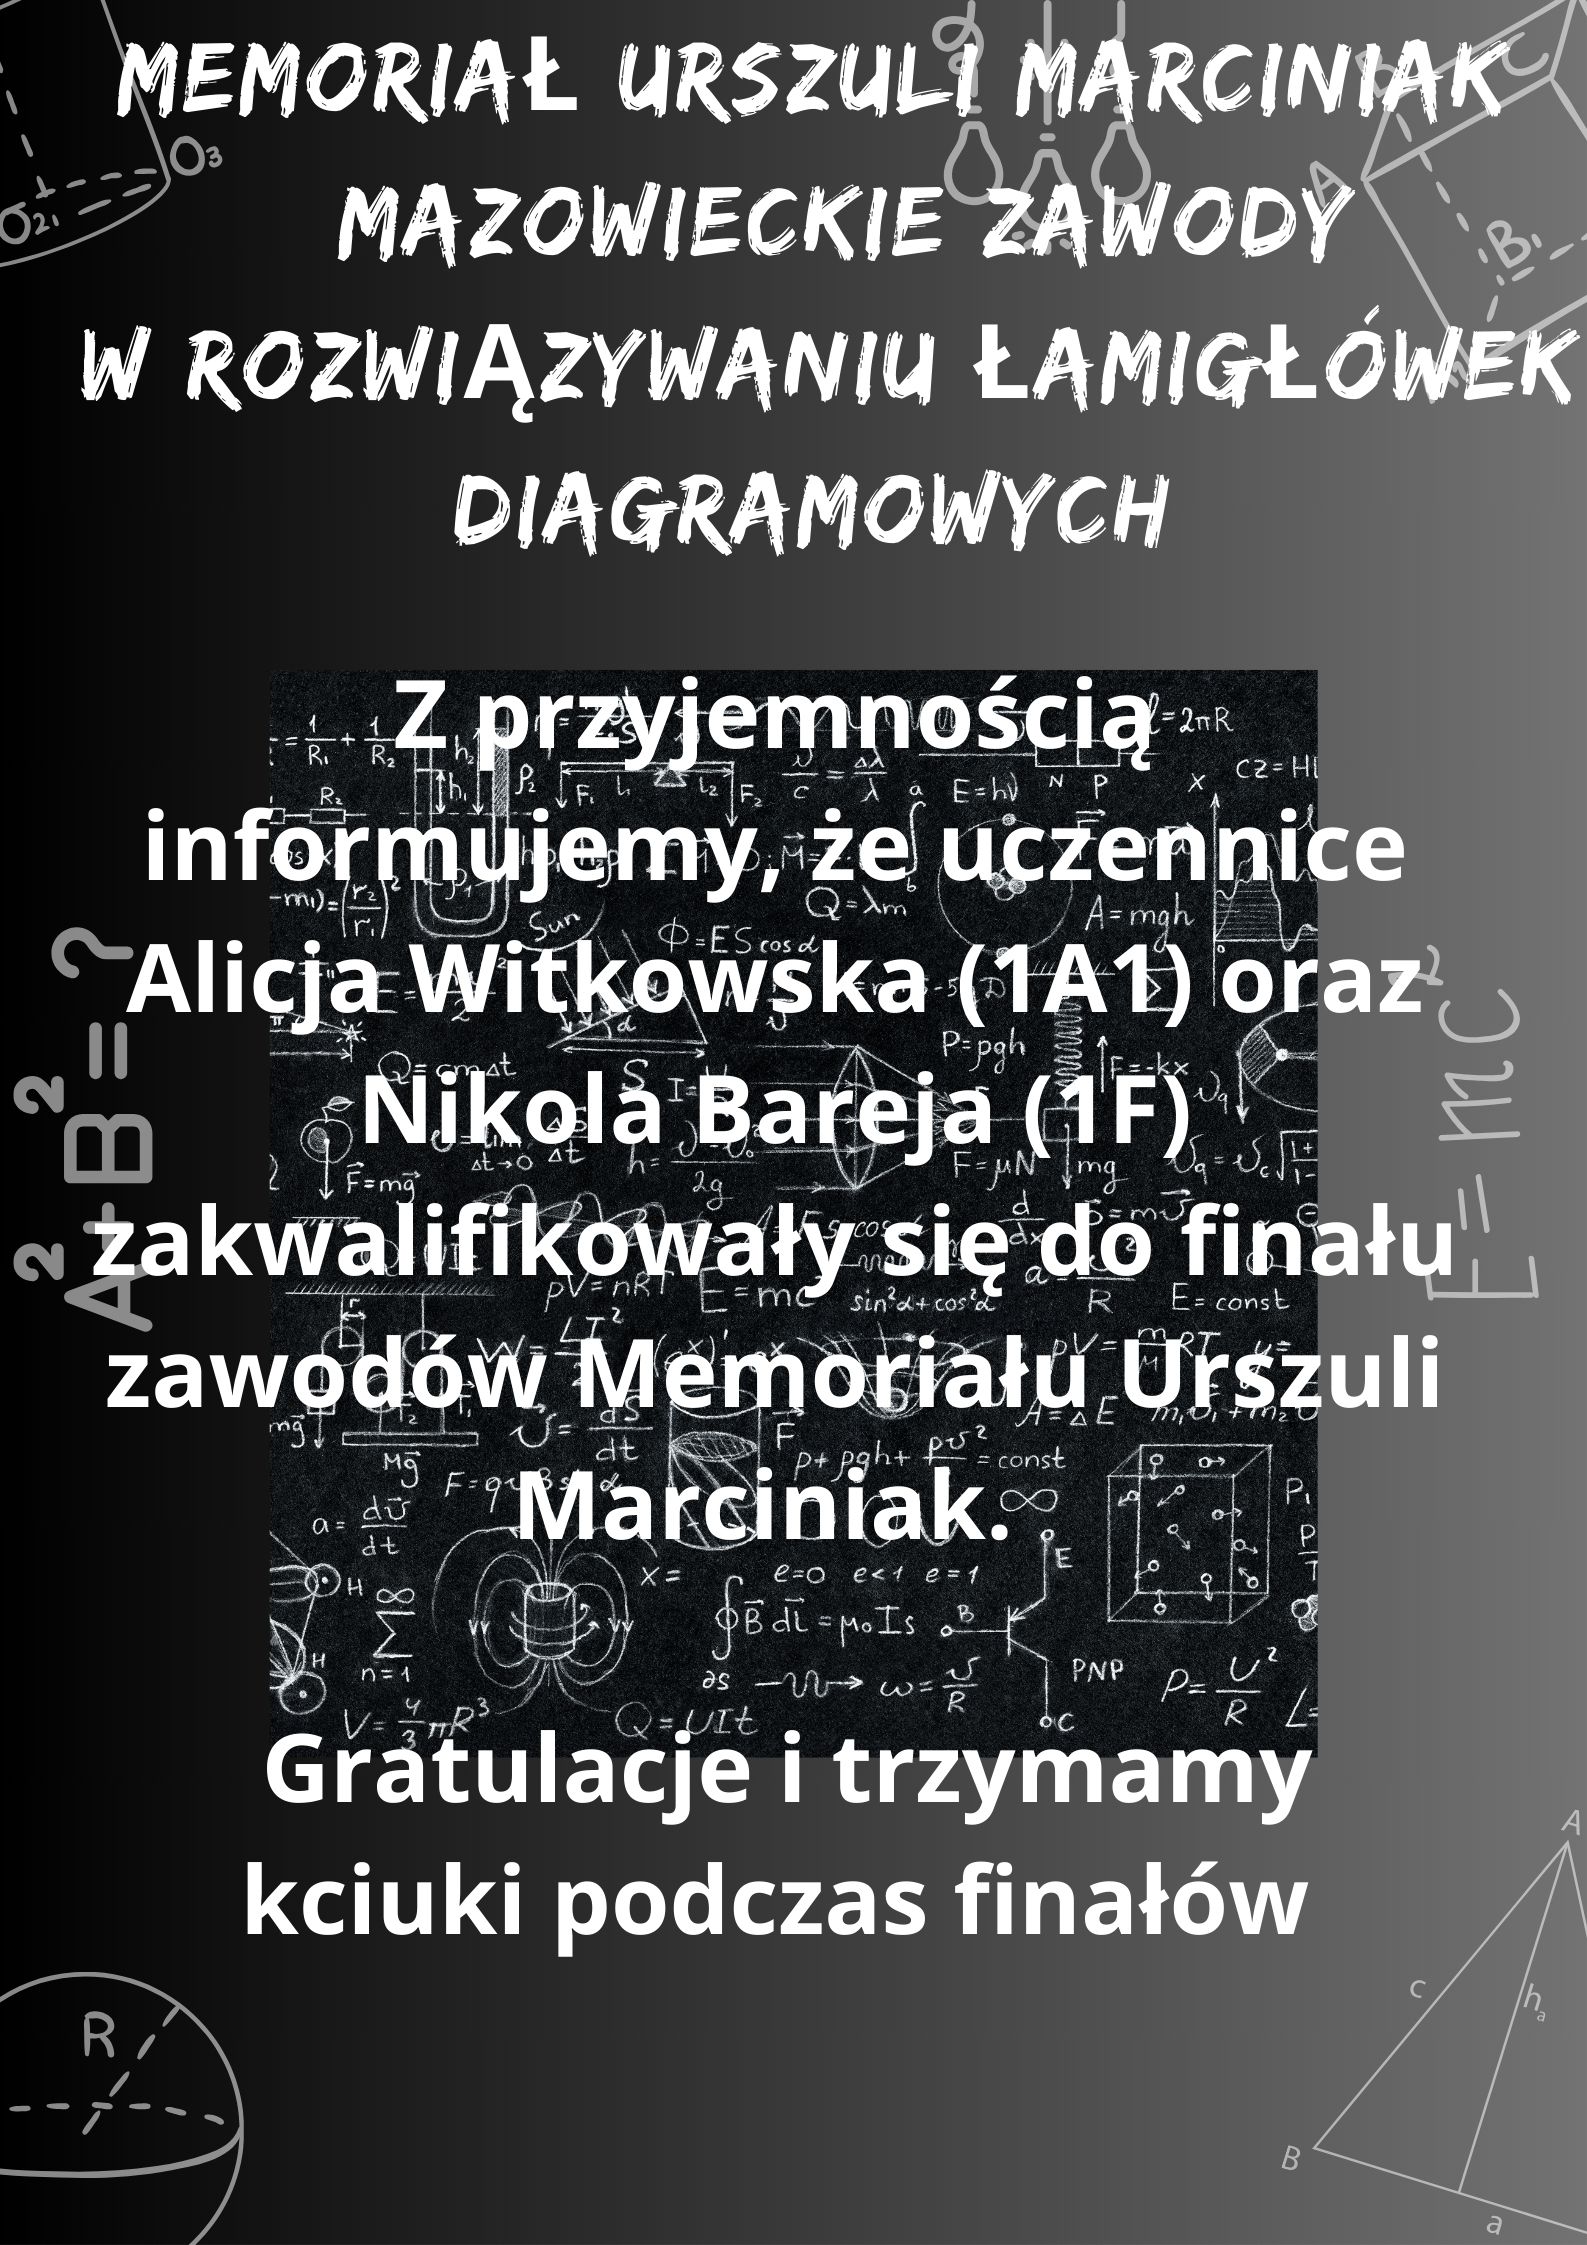 You are currently viewing Popularyzowanie logicznego myślenia i podnoszenie kultury matematycznej. Memoriał Urszuli Marciniak.